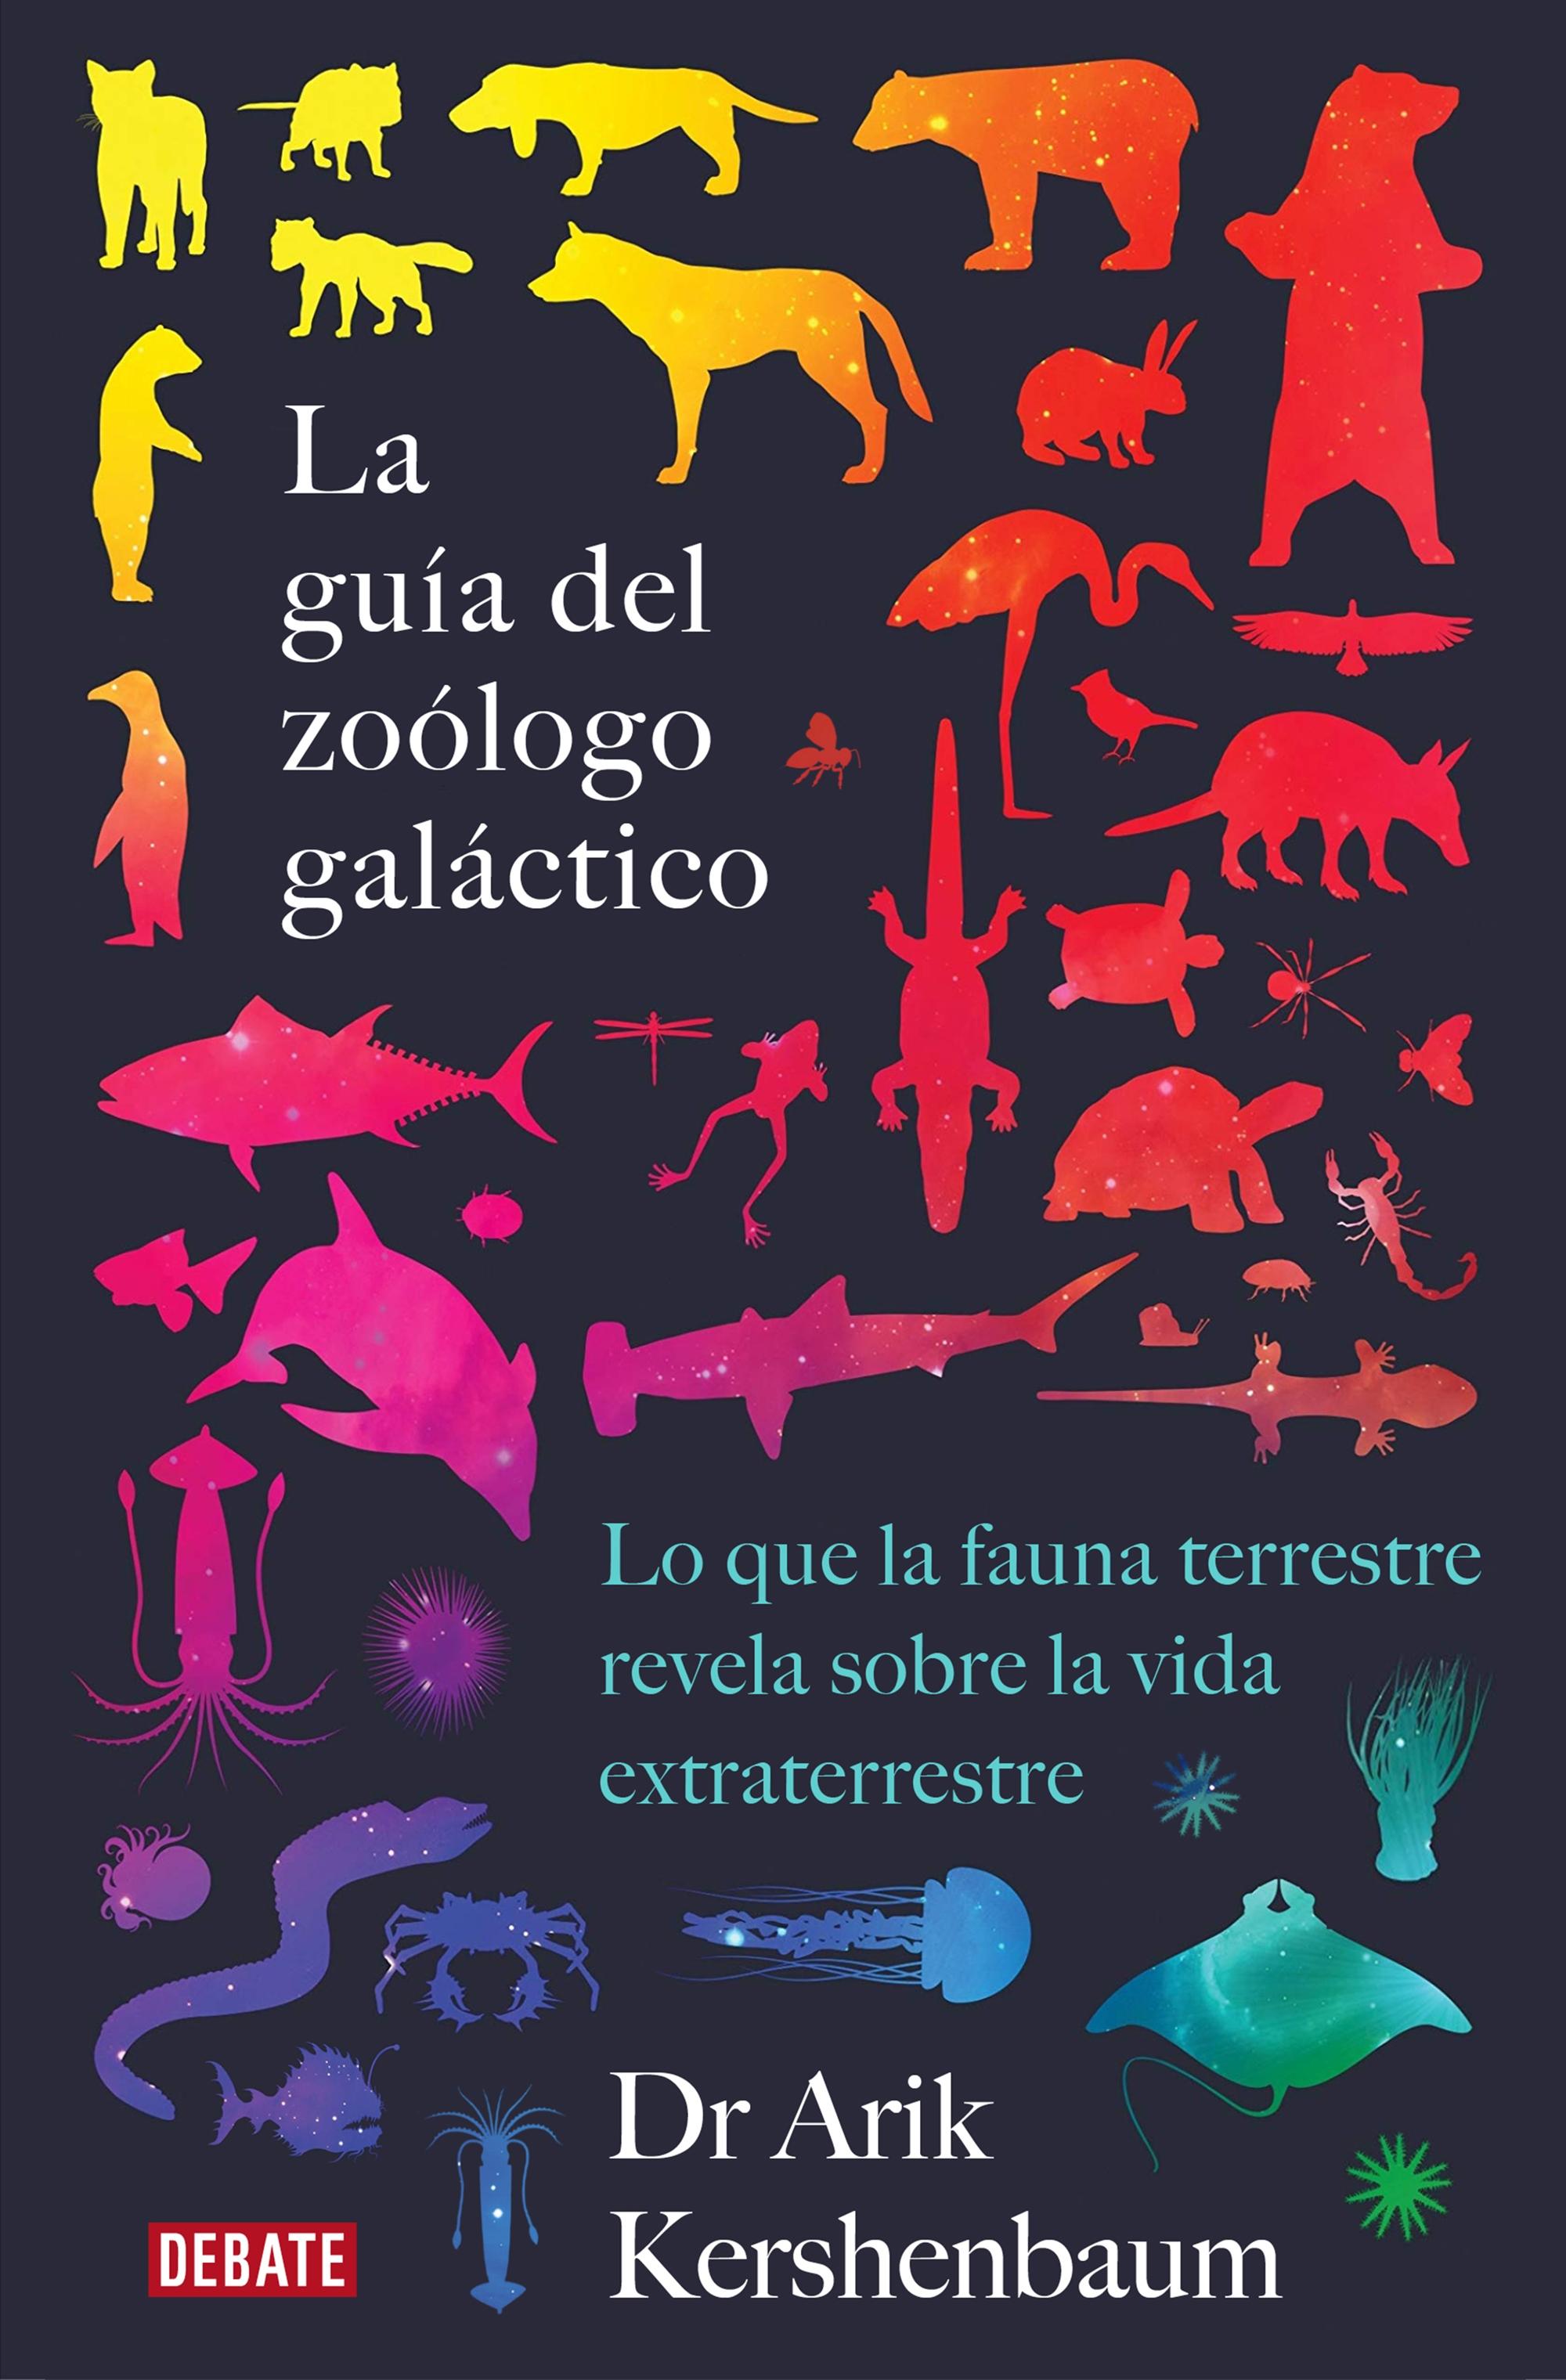 La guía del zoólogo galáctico "LO QUE LA FAUNA TERRESTRE REVELA SOBRE LA VIDA EXTRATERRESTRE". 